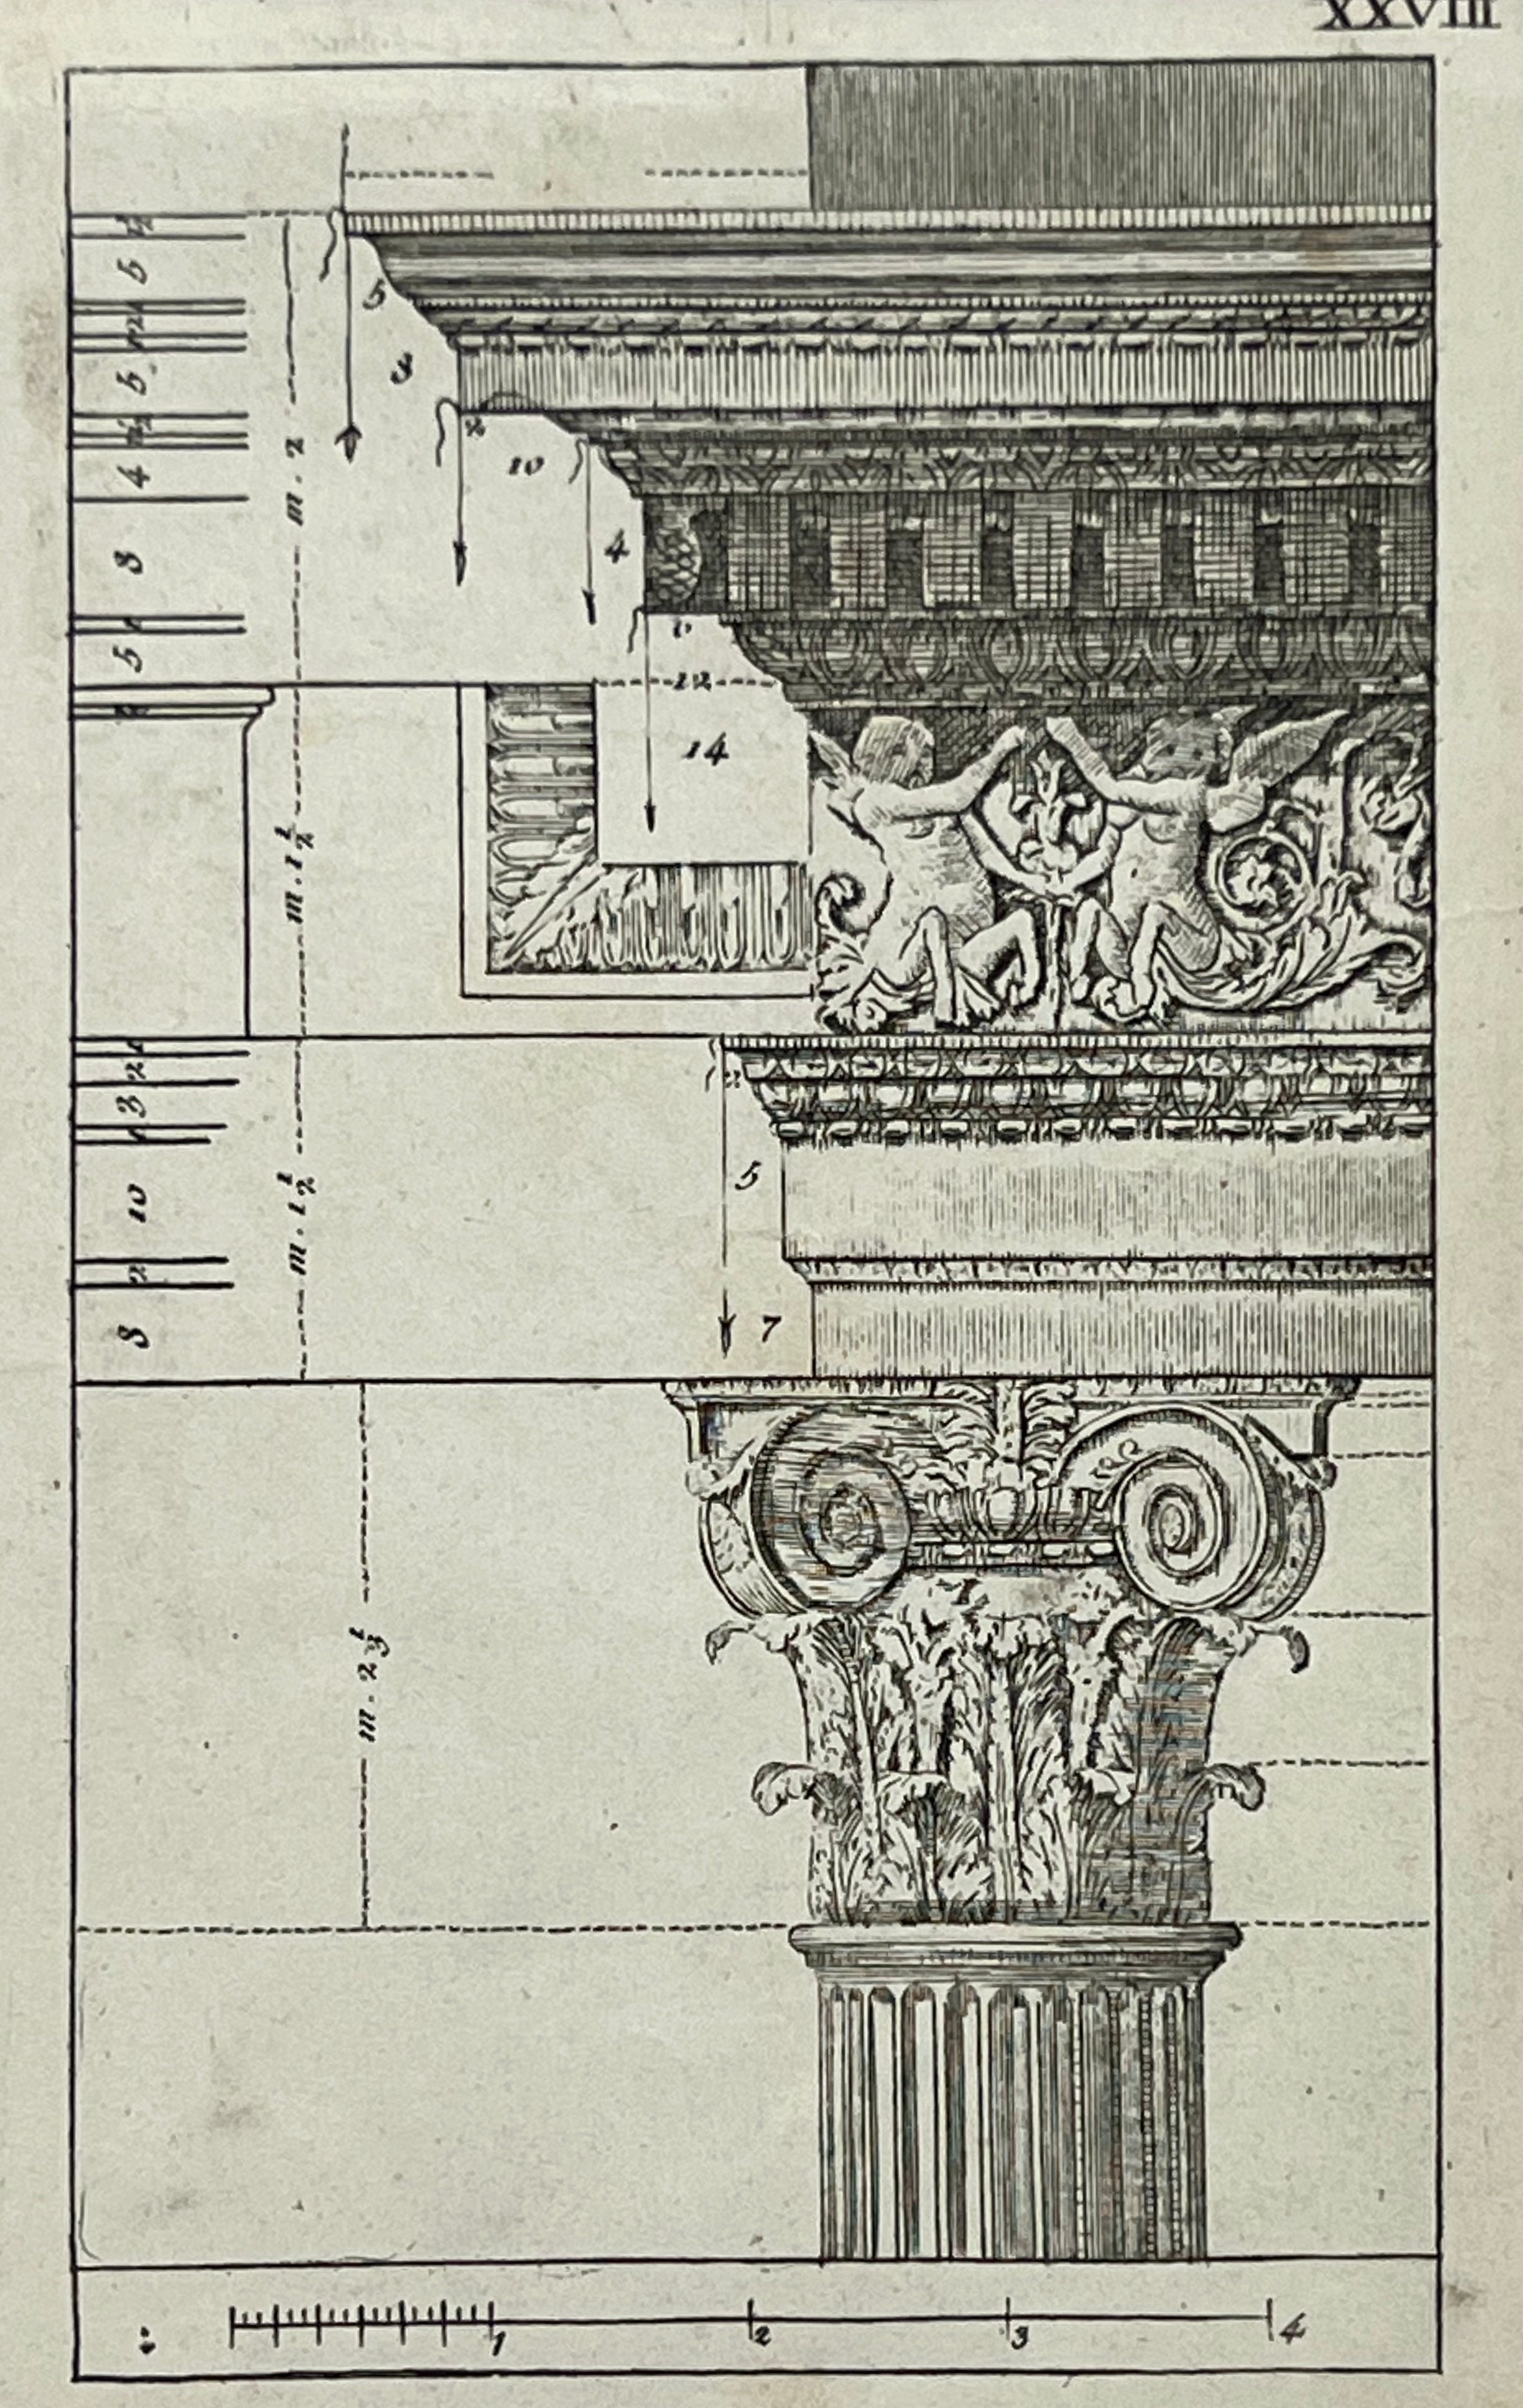 Incisione Architettonica con cornice - XVIII secolo